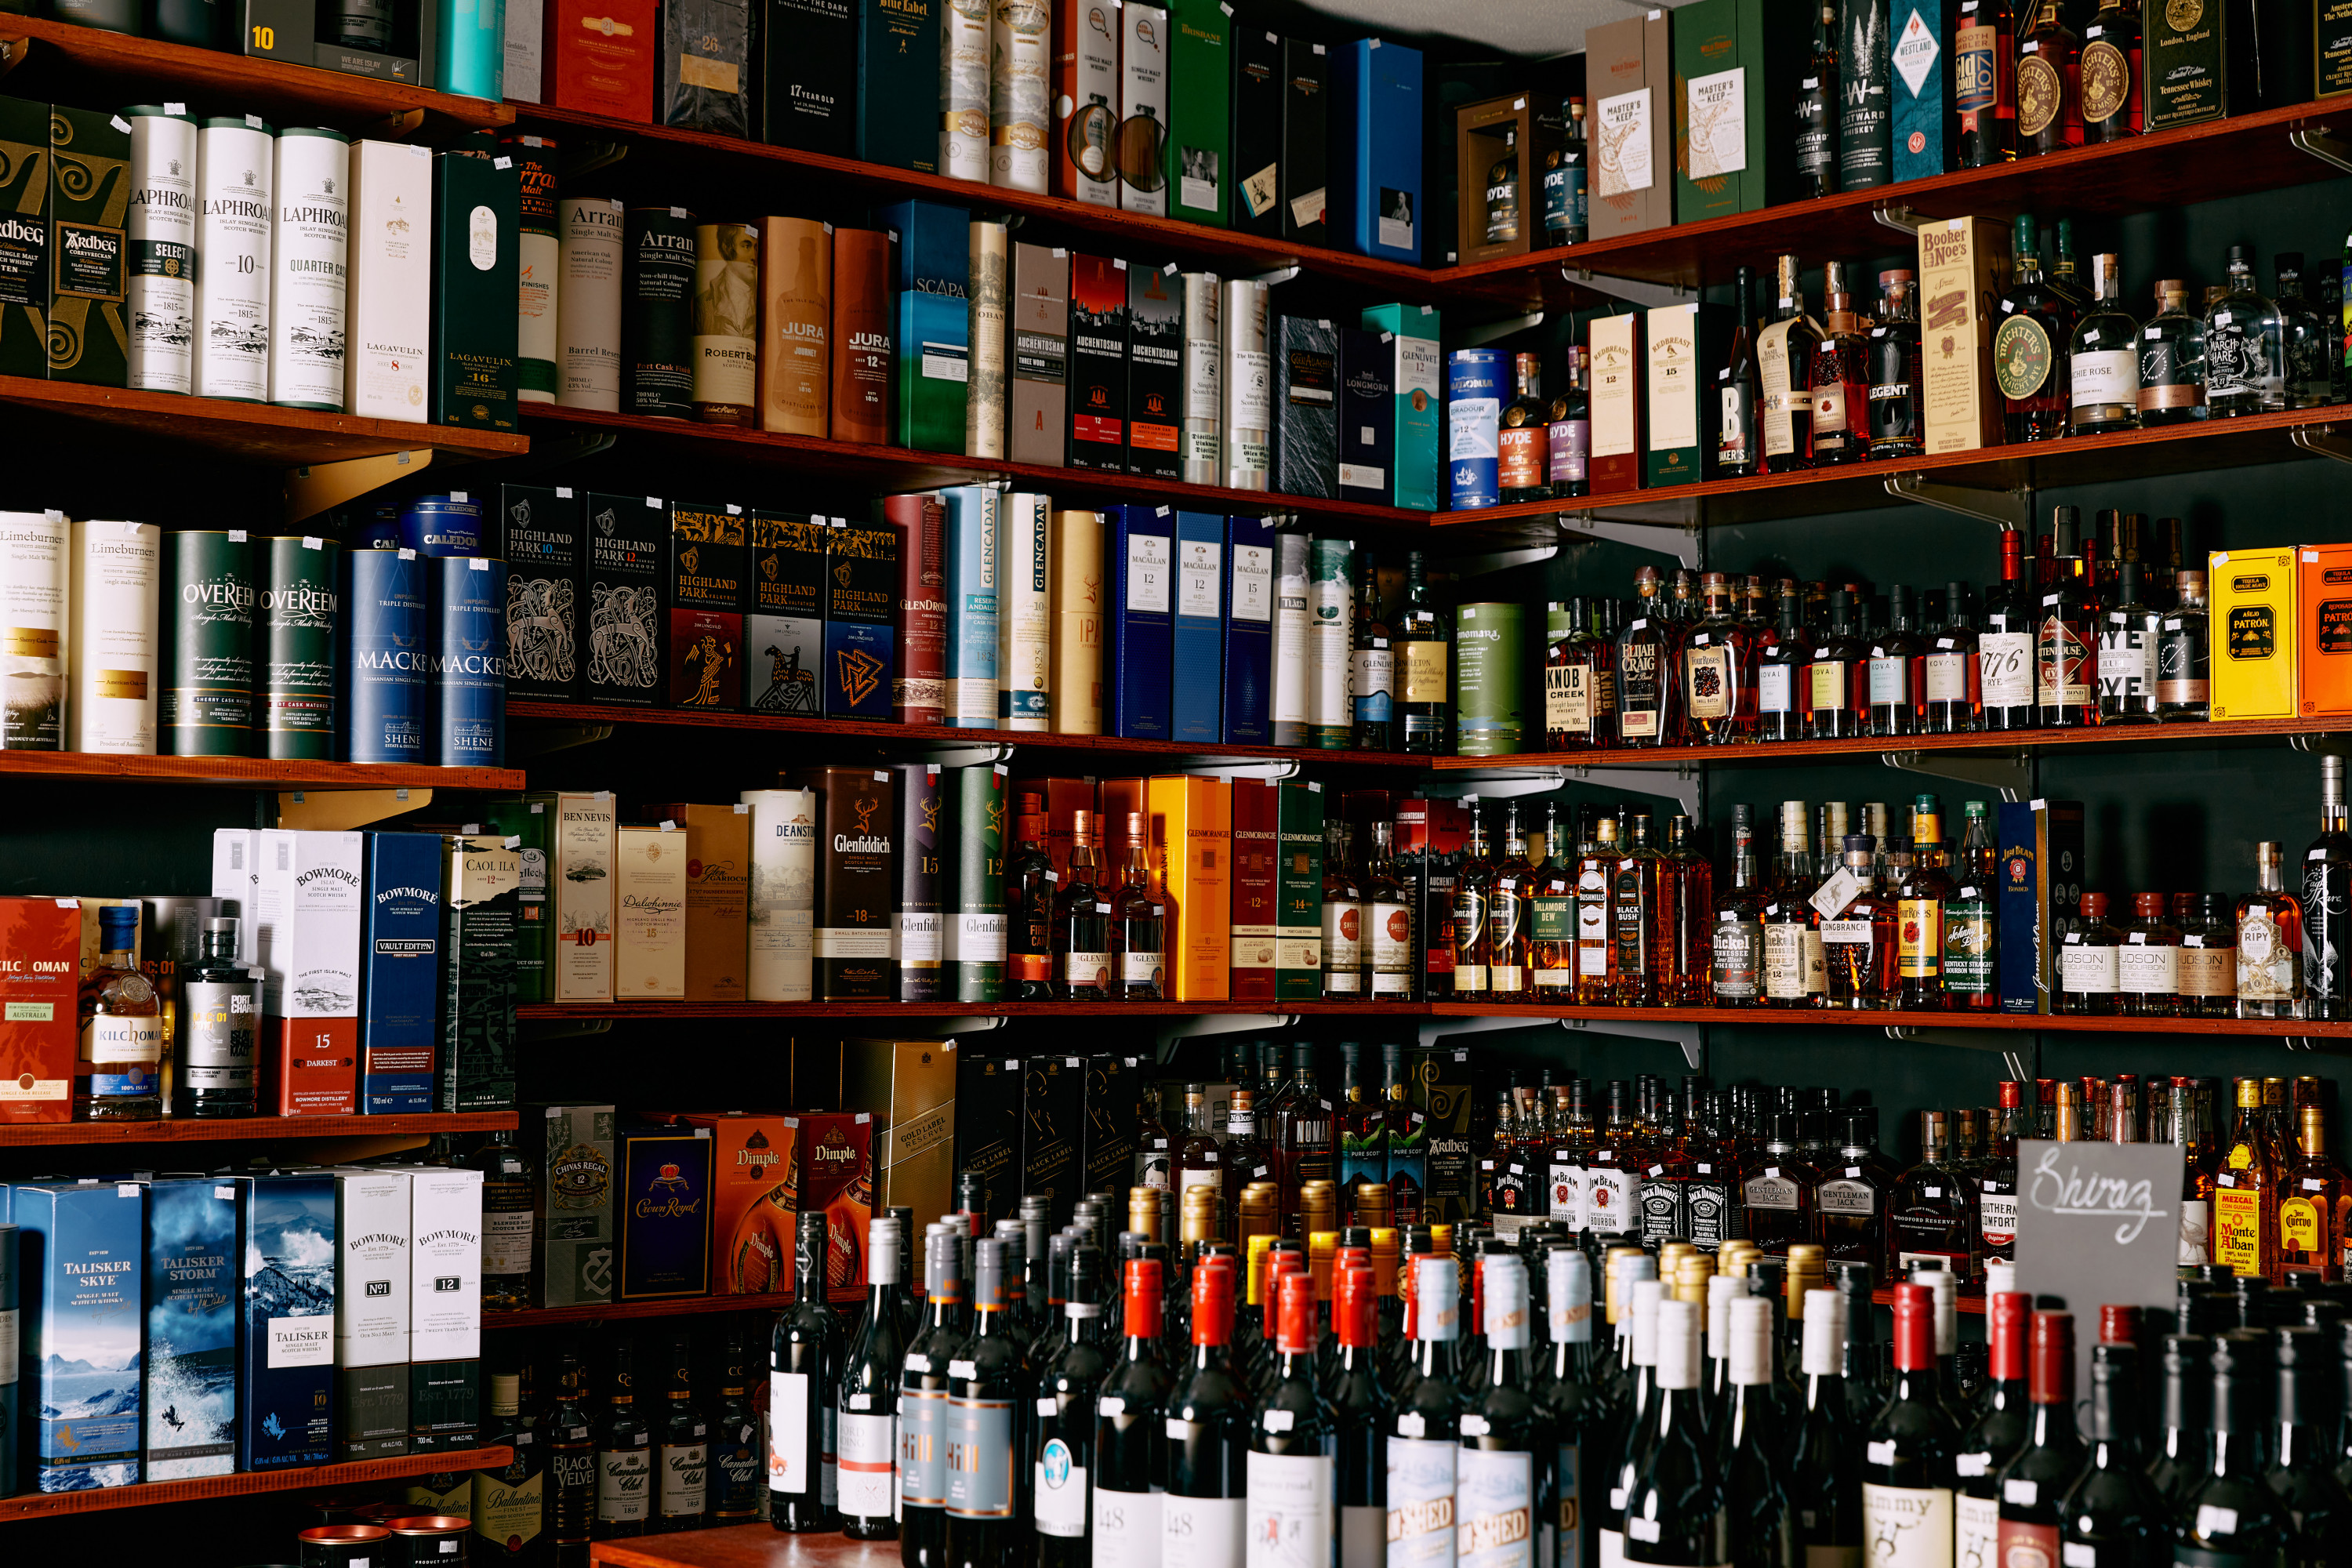 A shelf full of fine liquor.